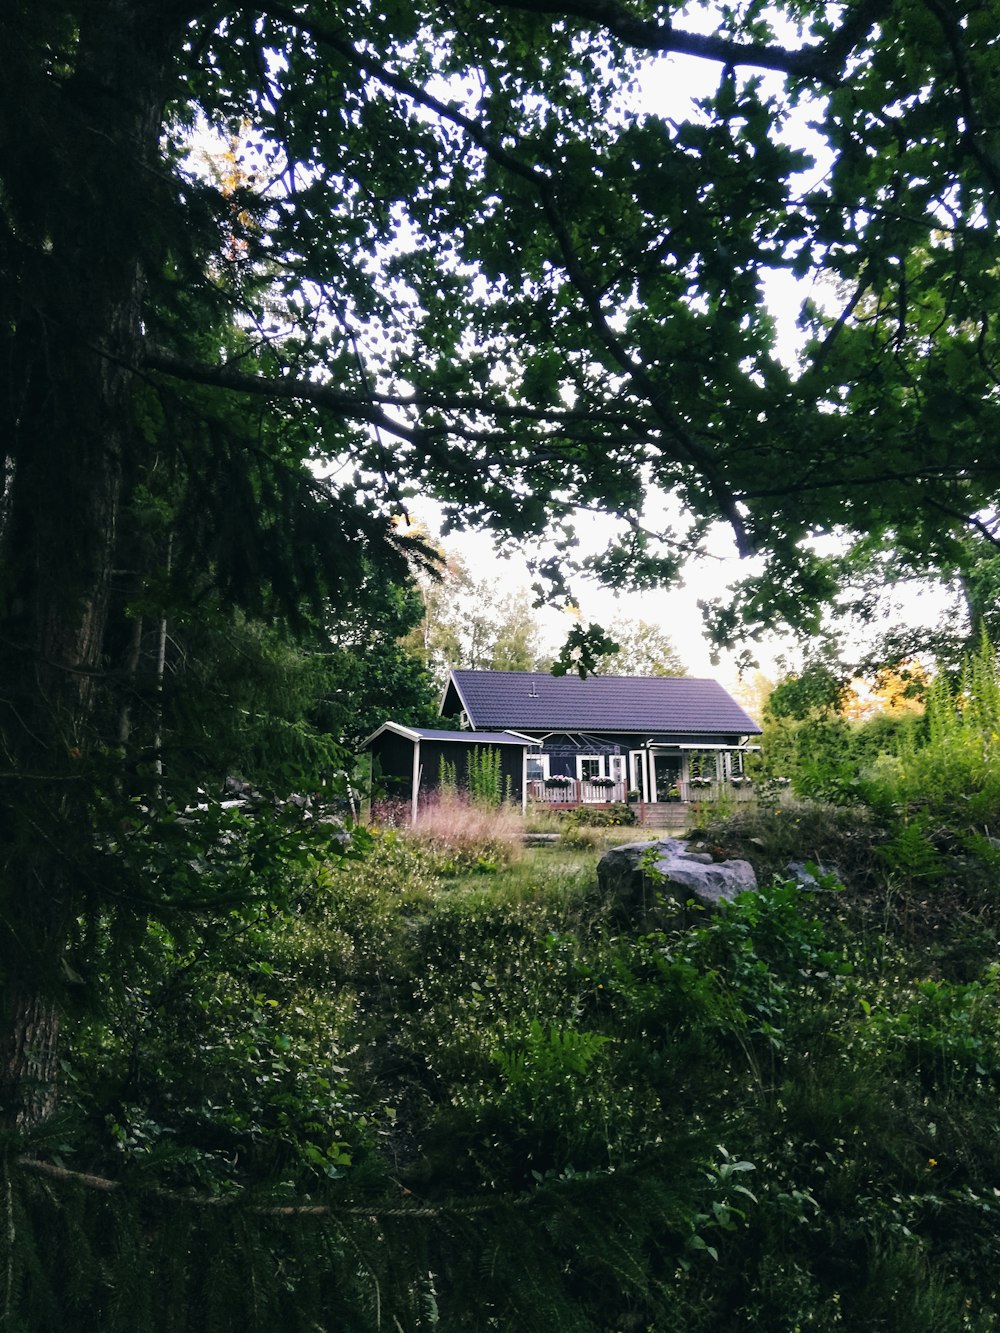 Maison en bois marron entourée d’arbres verts pendant la journée